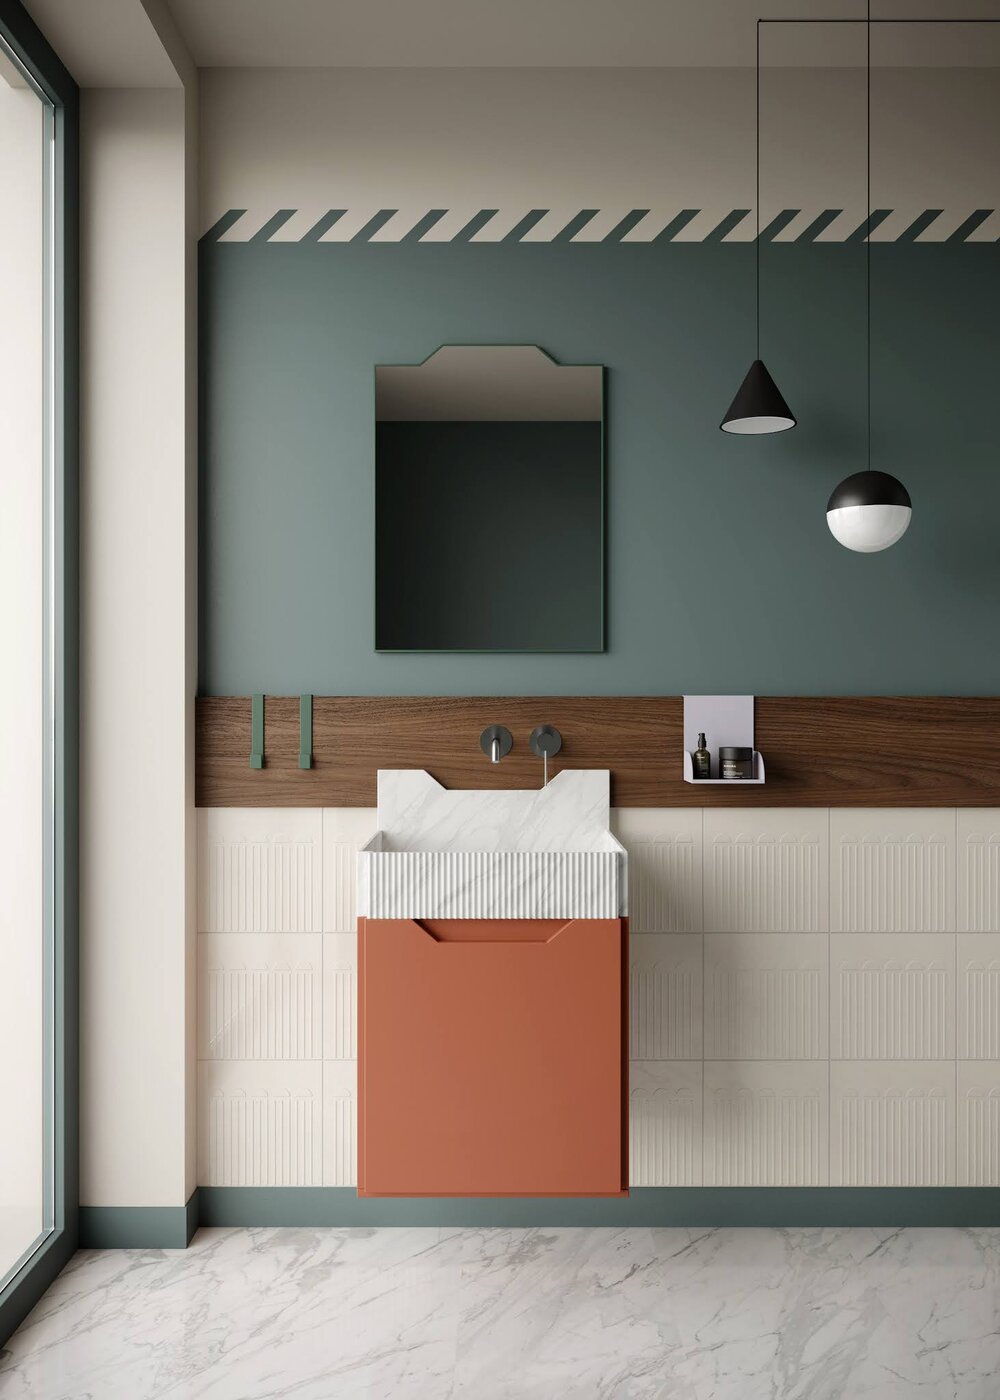 ilaria fatone inspirations - une salle de bains à l'allure futuriste